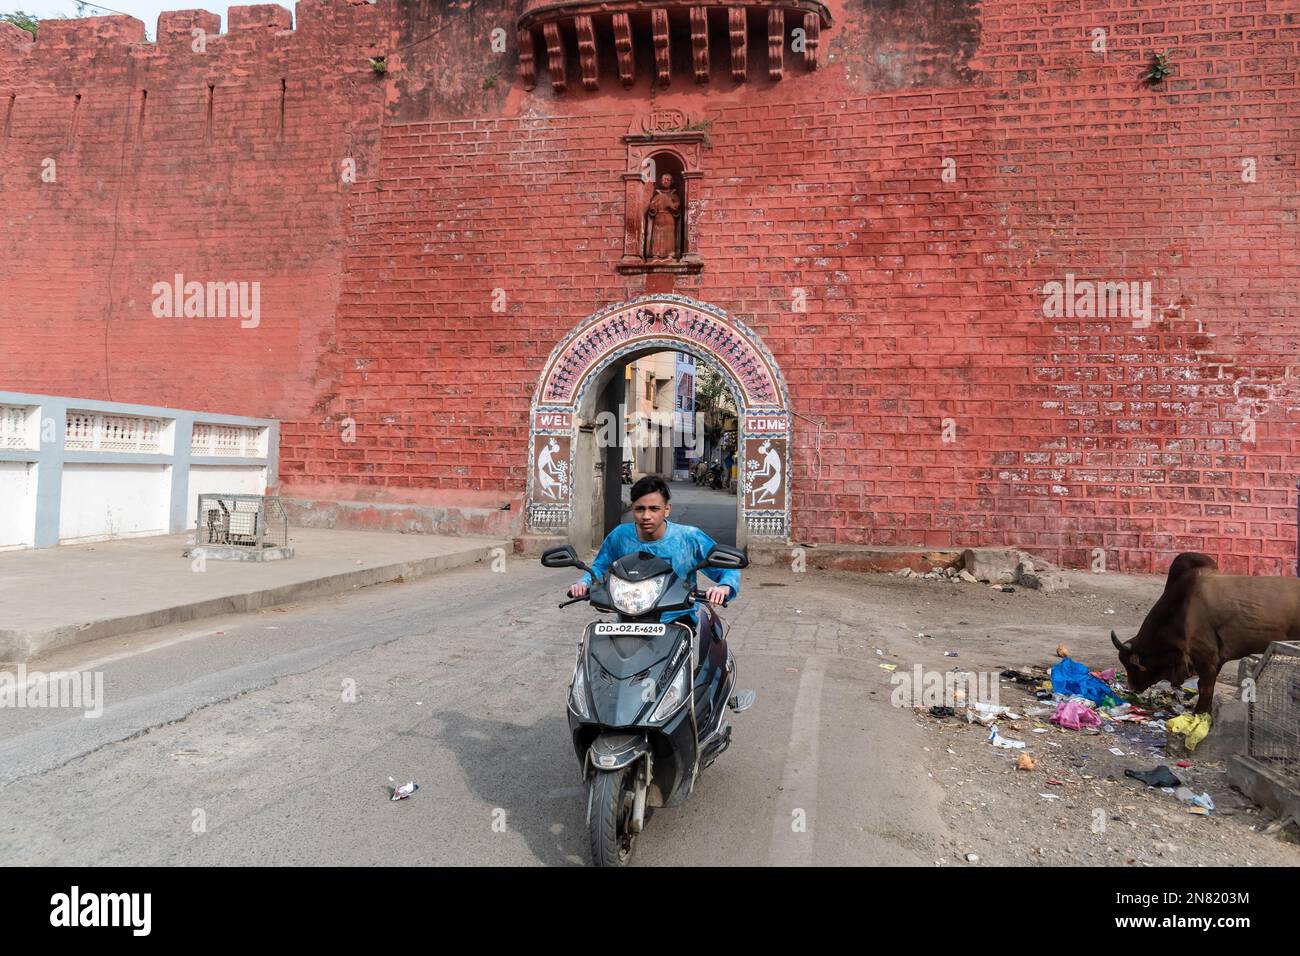 Diu, India - December 2018: A man riding a bike past the red walls of the Portuguese era Zampa gateway in Diu Island. Stock Photo